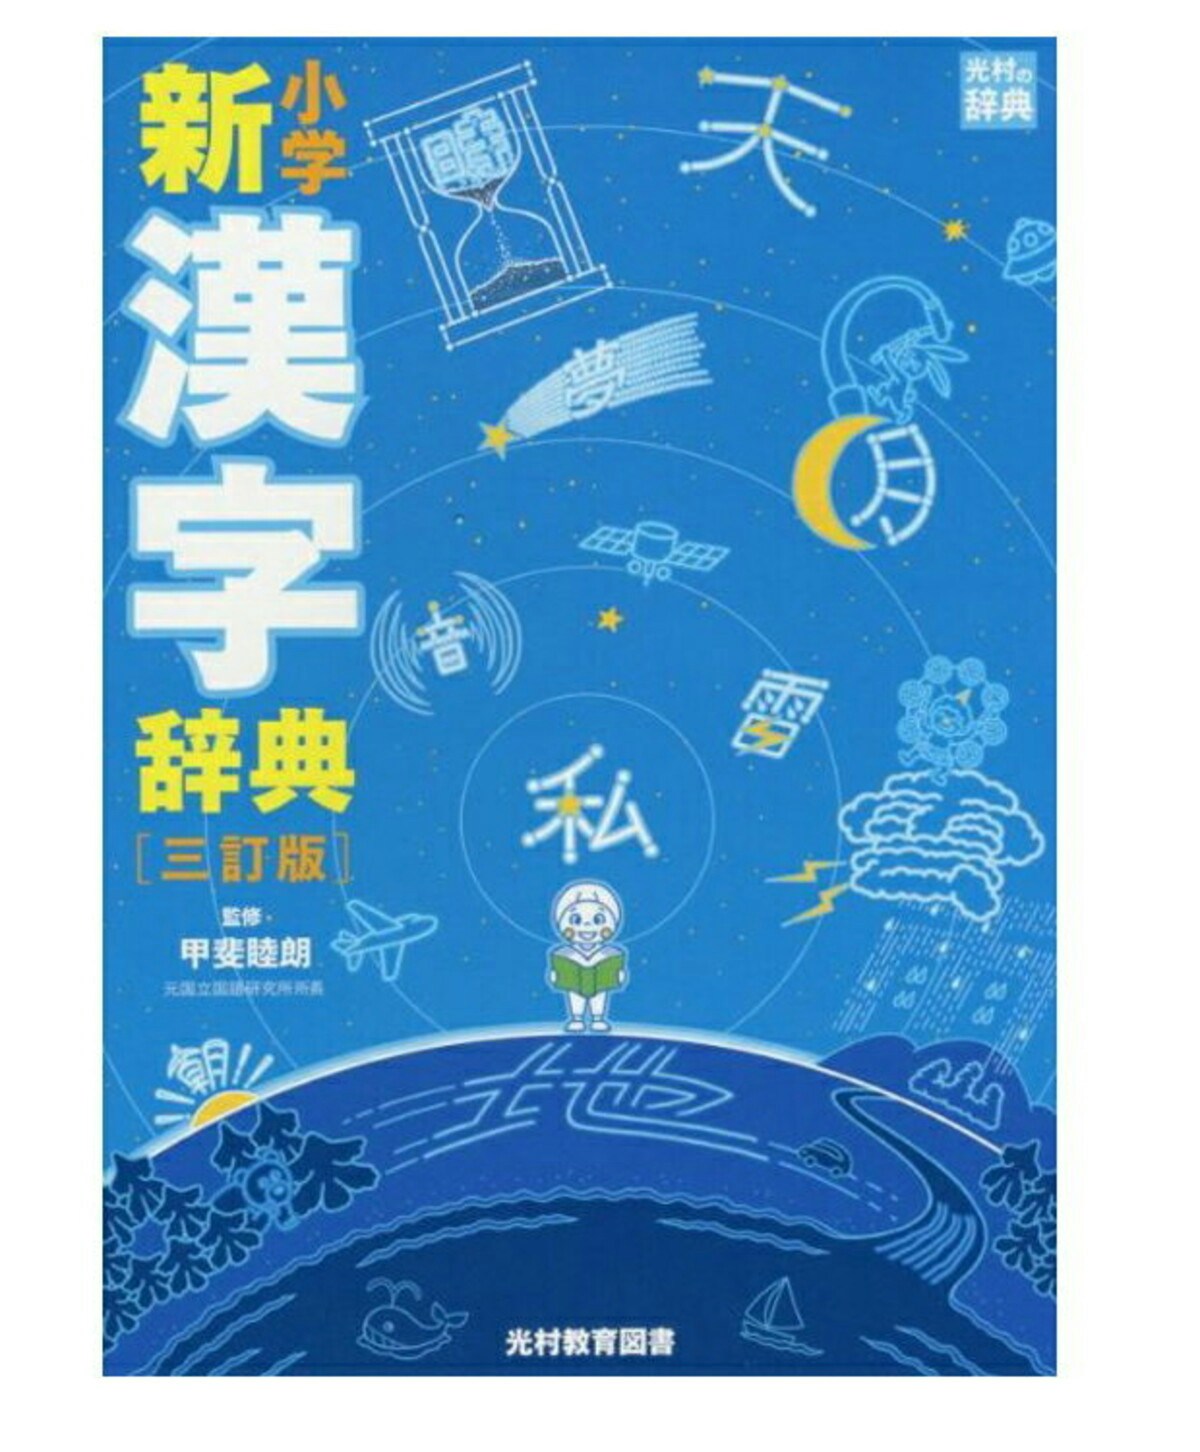 21年最新版 小学生におすすめの漢字辞典 辞書アプリ10選 ママリ